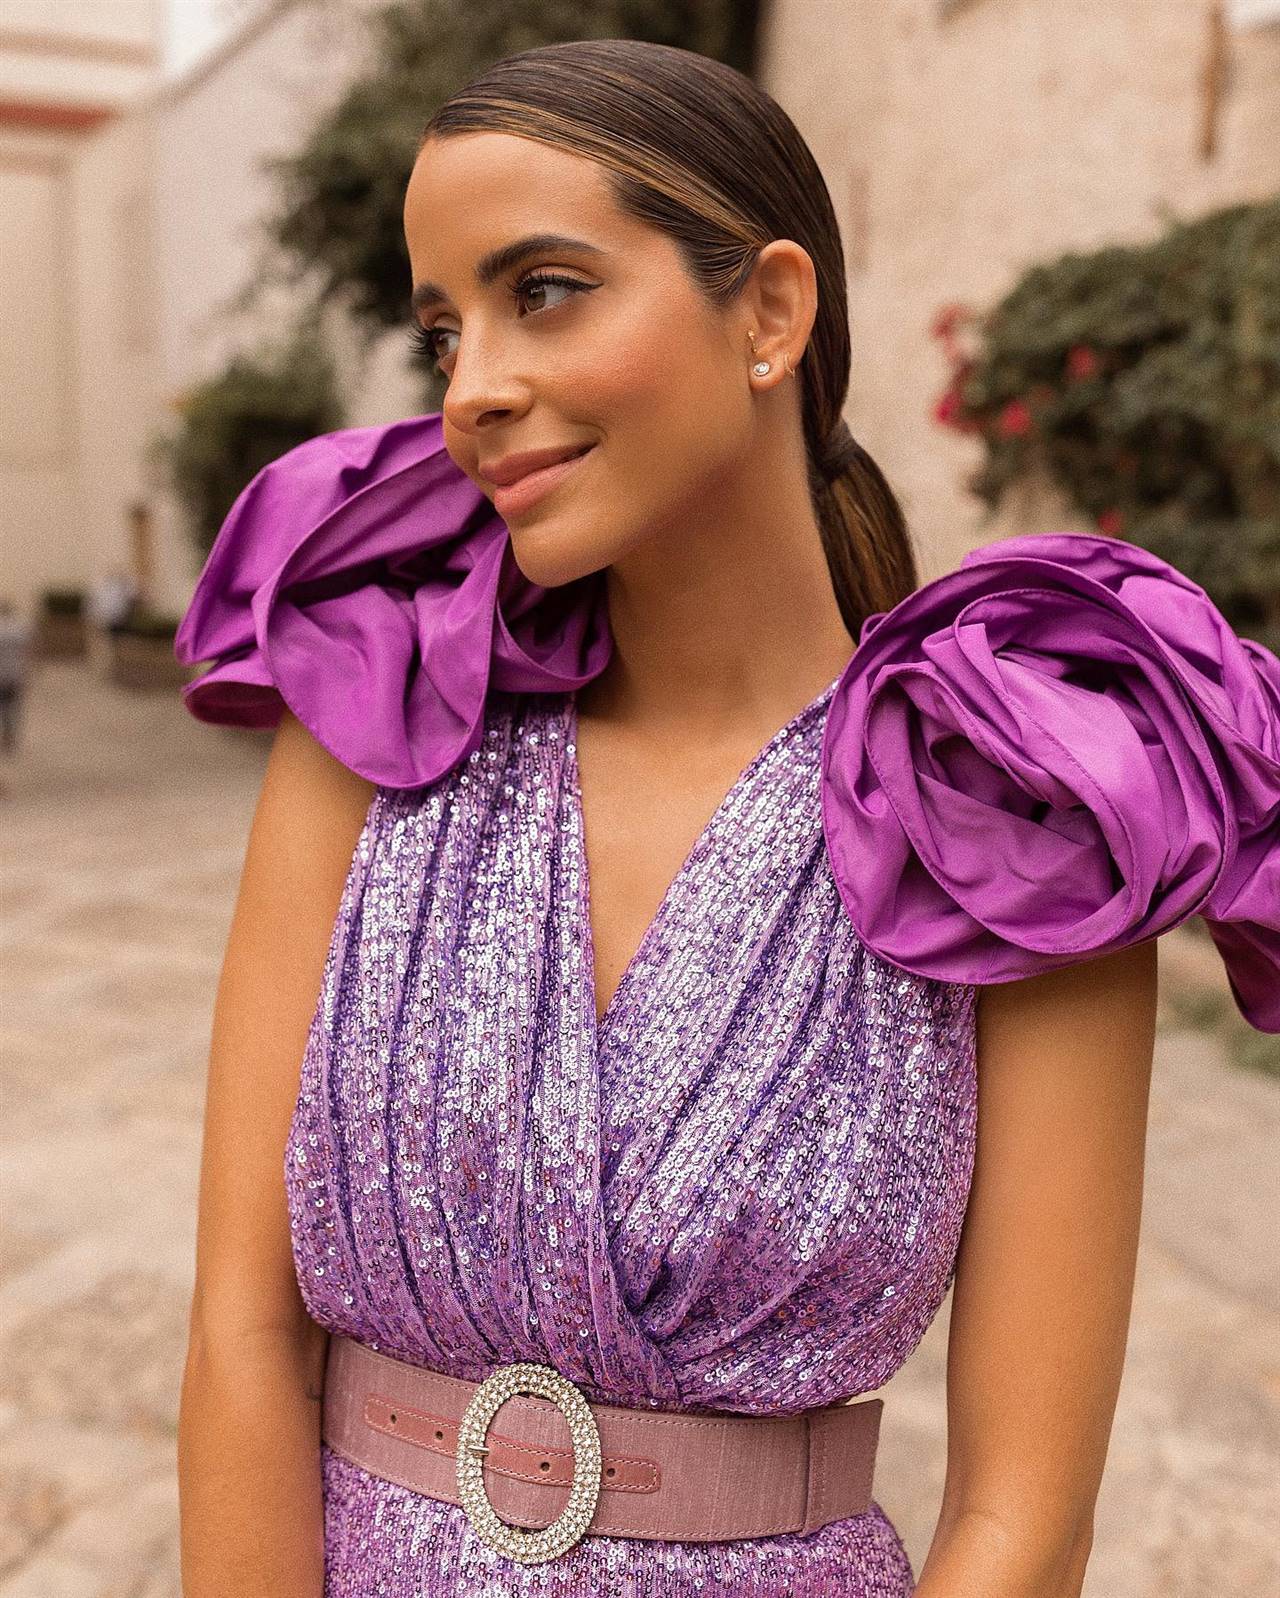 graduado A escala nacional hoja 15 vestidos originales de invitada de boda para no coincidir con nadie